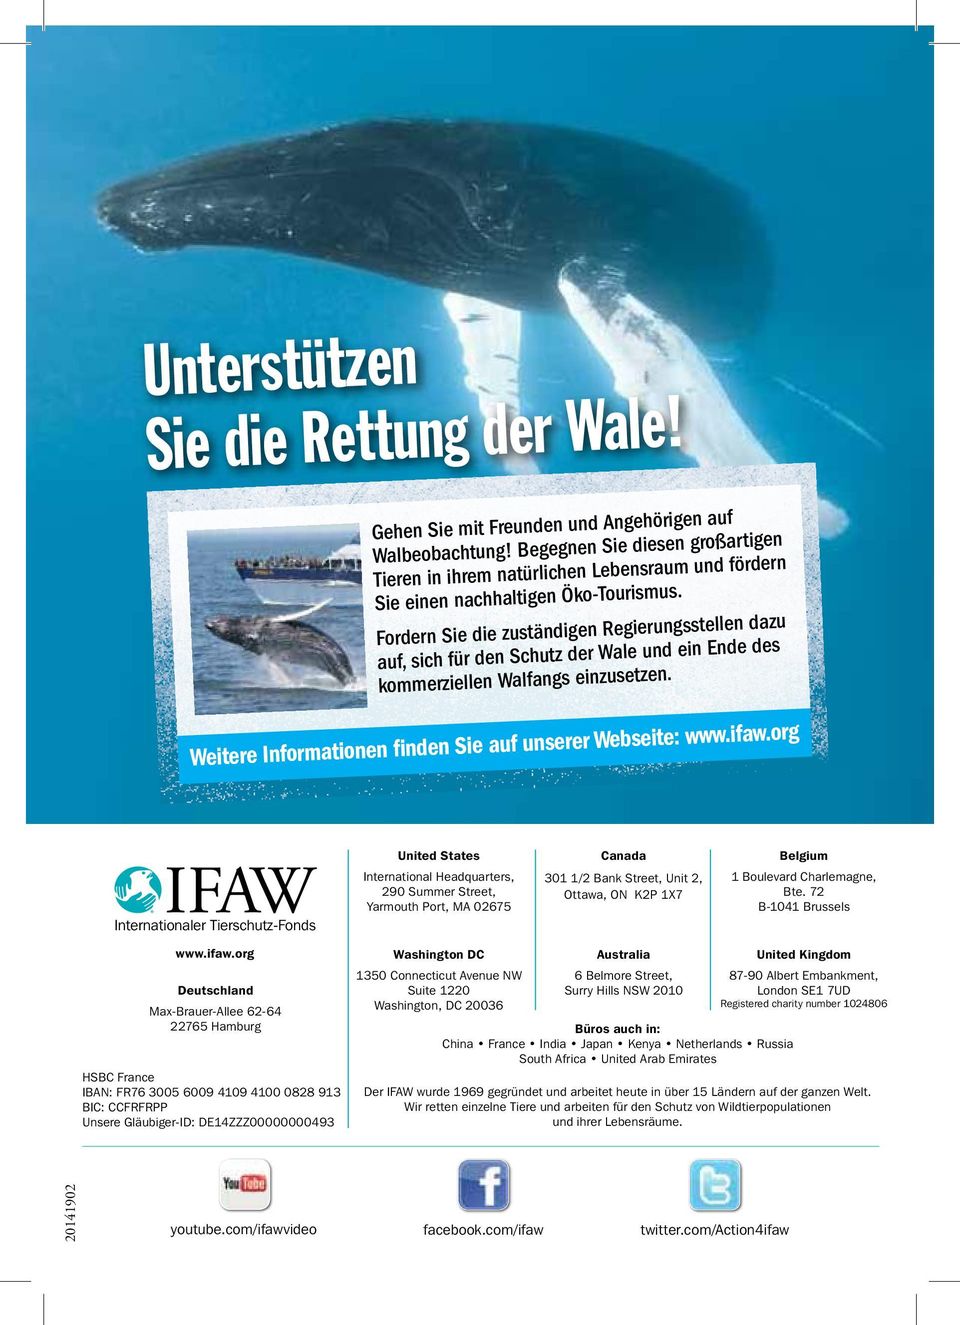 Fordern Sie die zuständigen Regierungsstellen dazu auf, sich für den Schutz der Wale und ein Ende des kommerziellen Walfangs einzusetzen. Weitere Informationen finden Sie auf unserer Webseite: www.